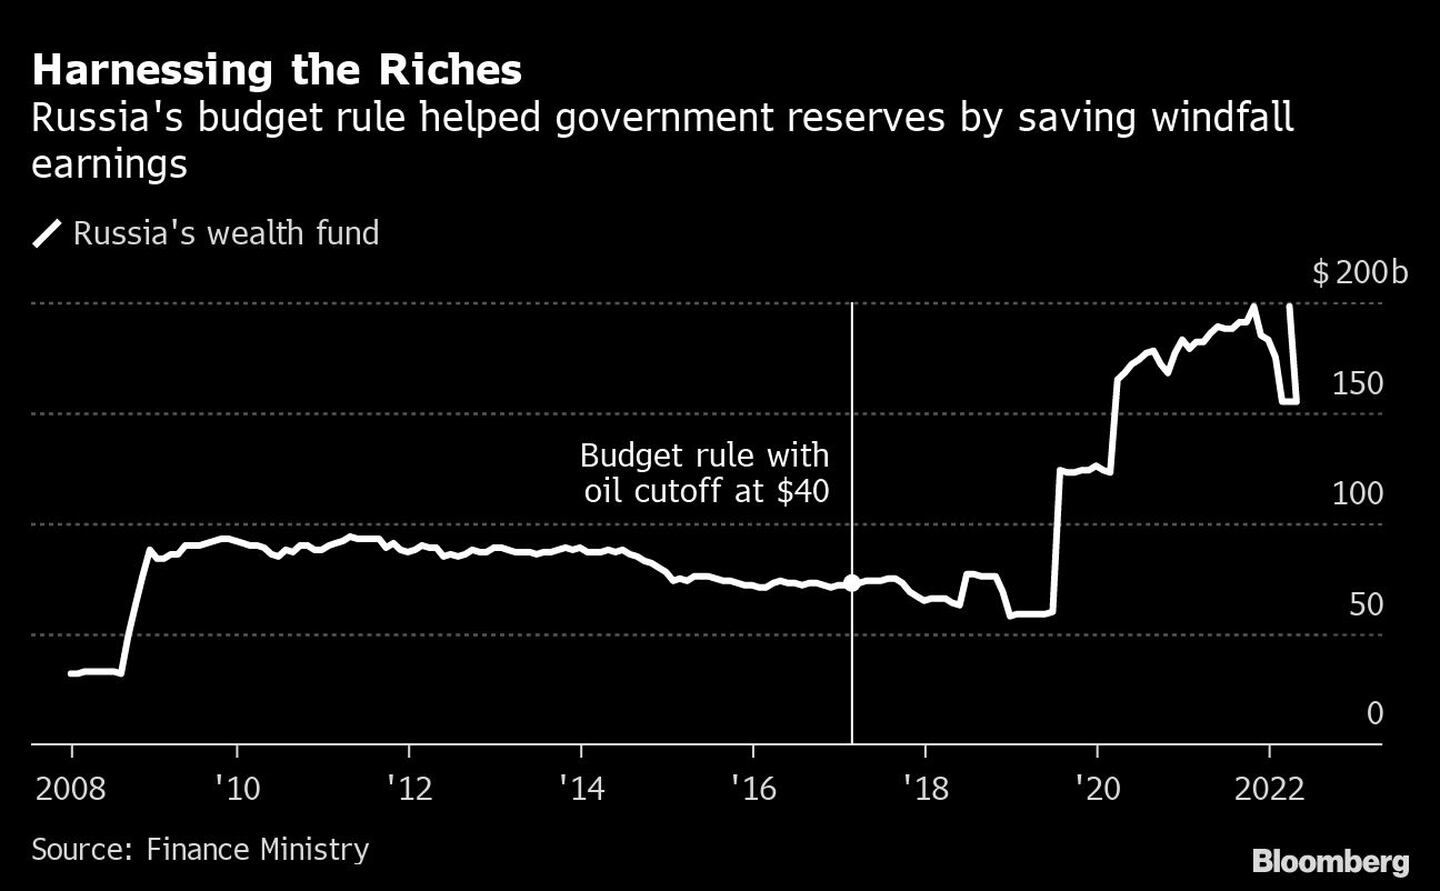 La norma presupuestaria rusa ayudó a las reservas del gobierno al ahorrar los ingresos inesperadosdfd